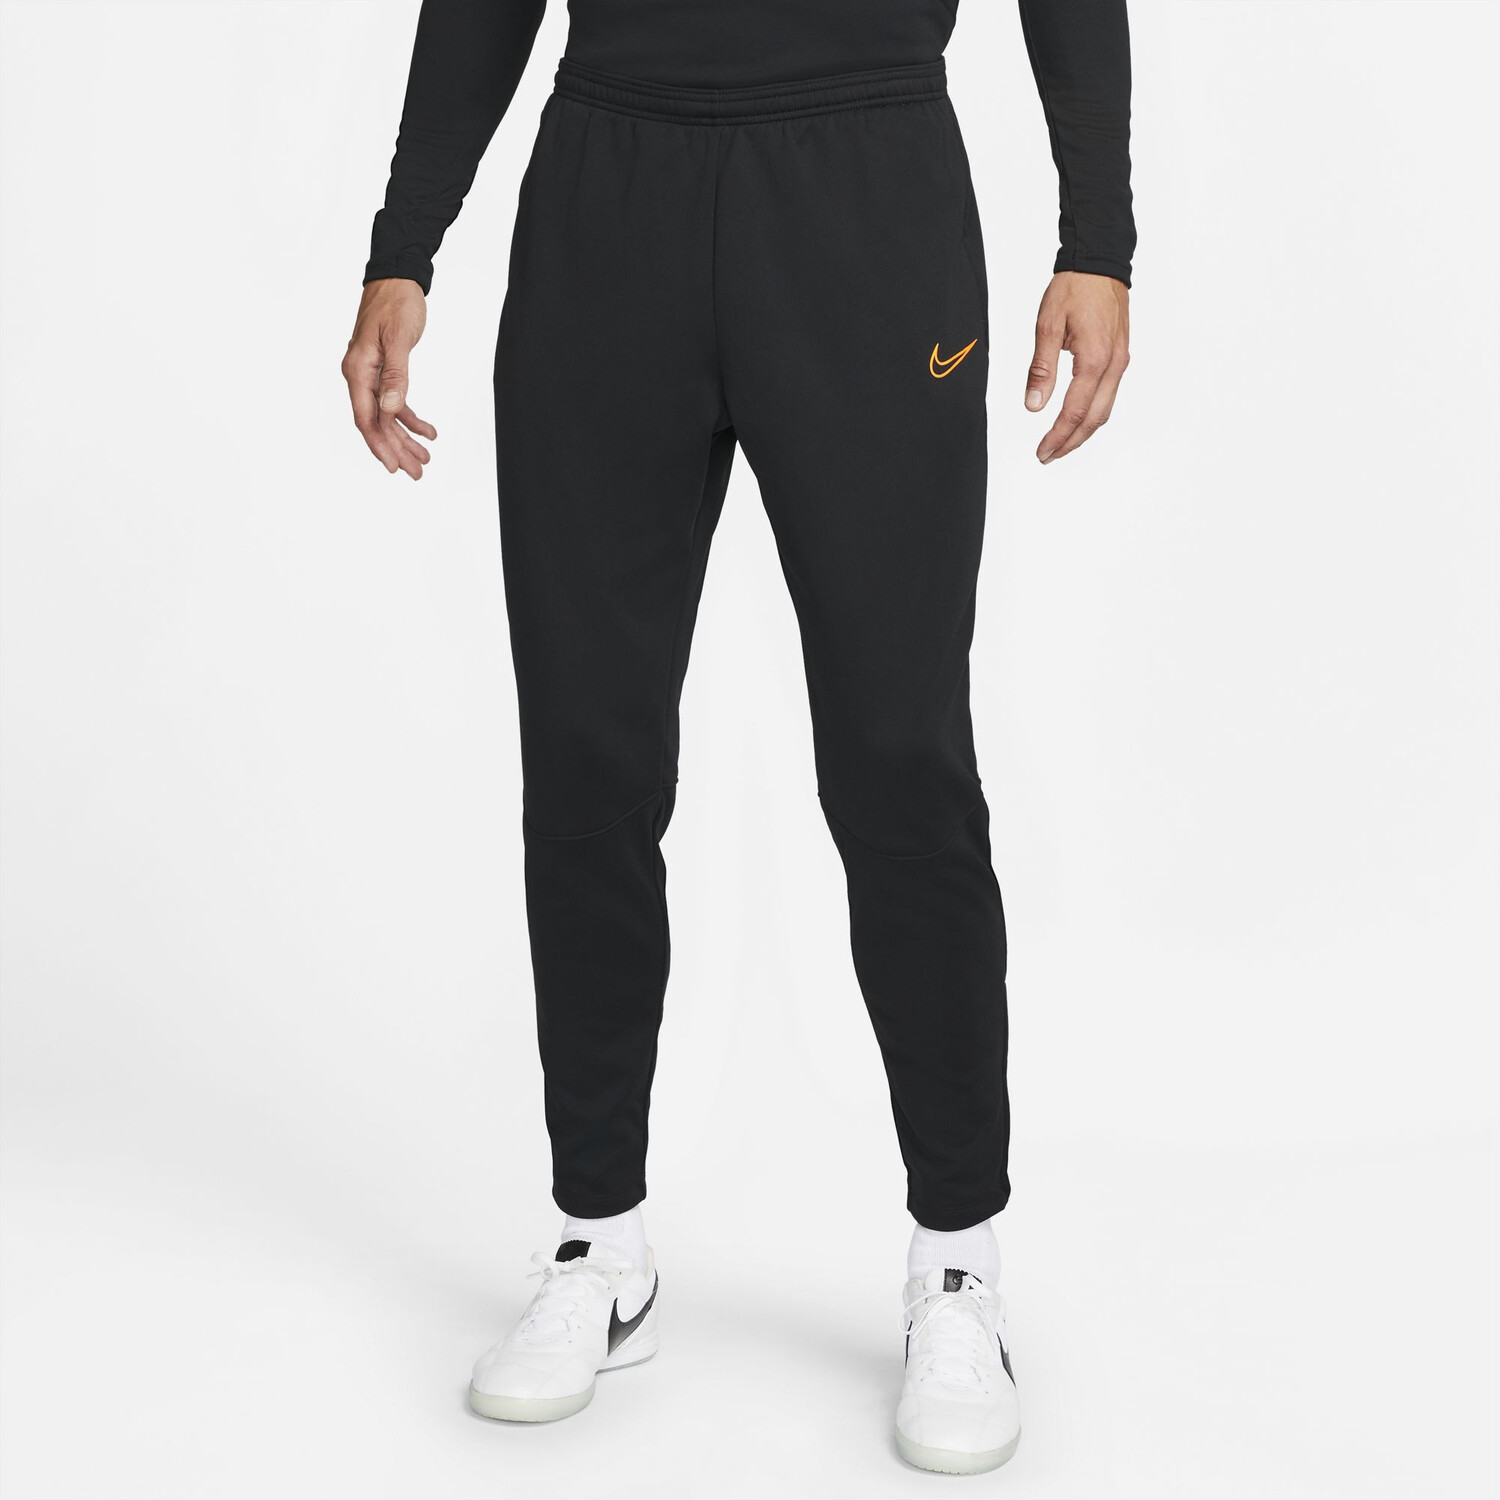 Pantalon de survêtement homme Nike Dri-FIT Academy Pro - Noir